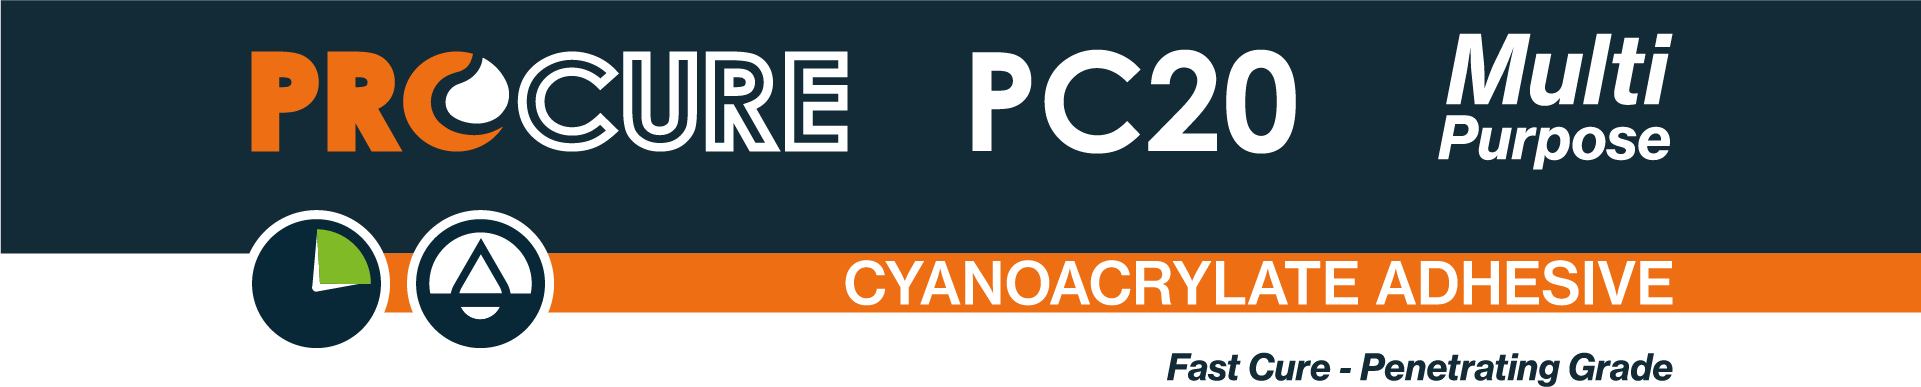 Procure PC20 Cyanoacrylate Adhesive